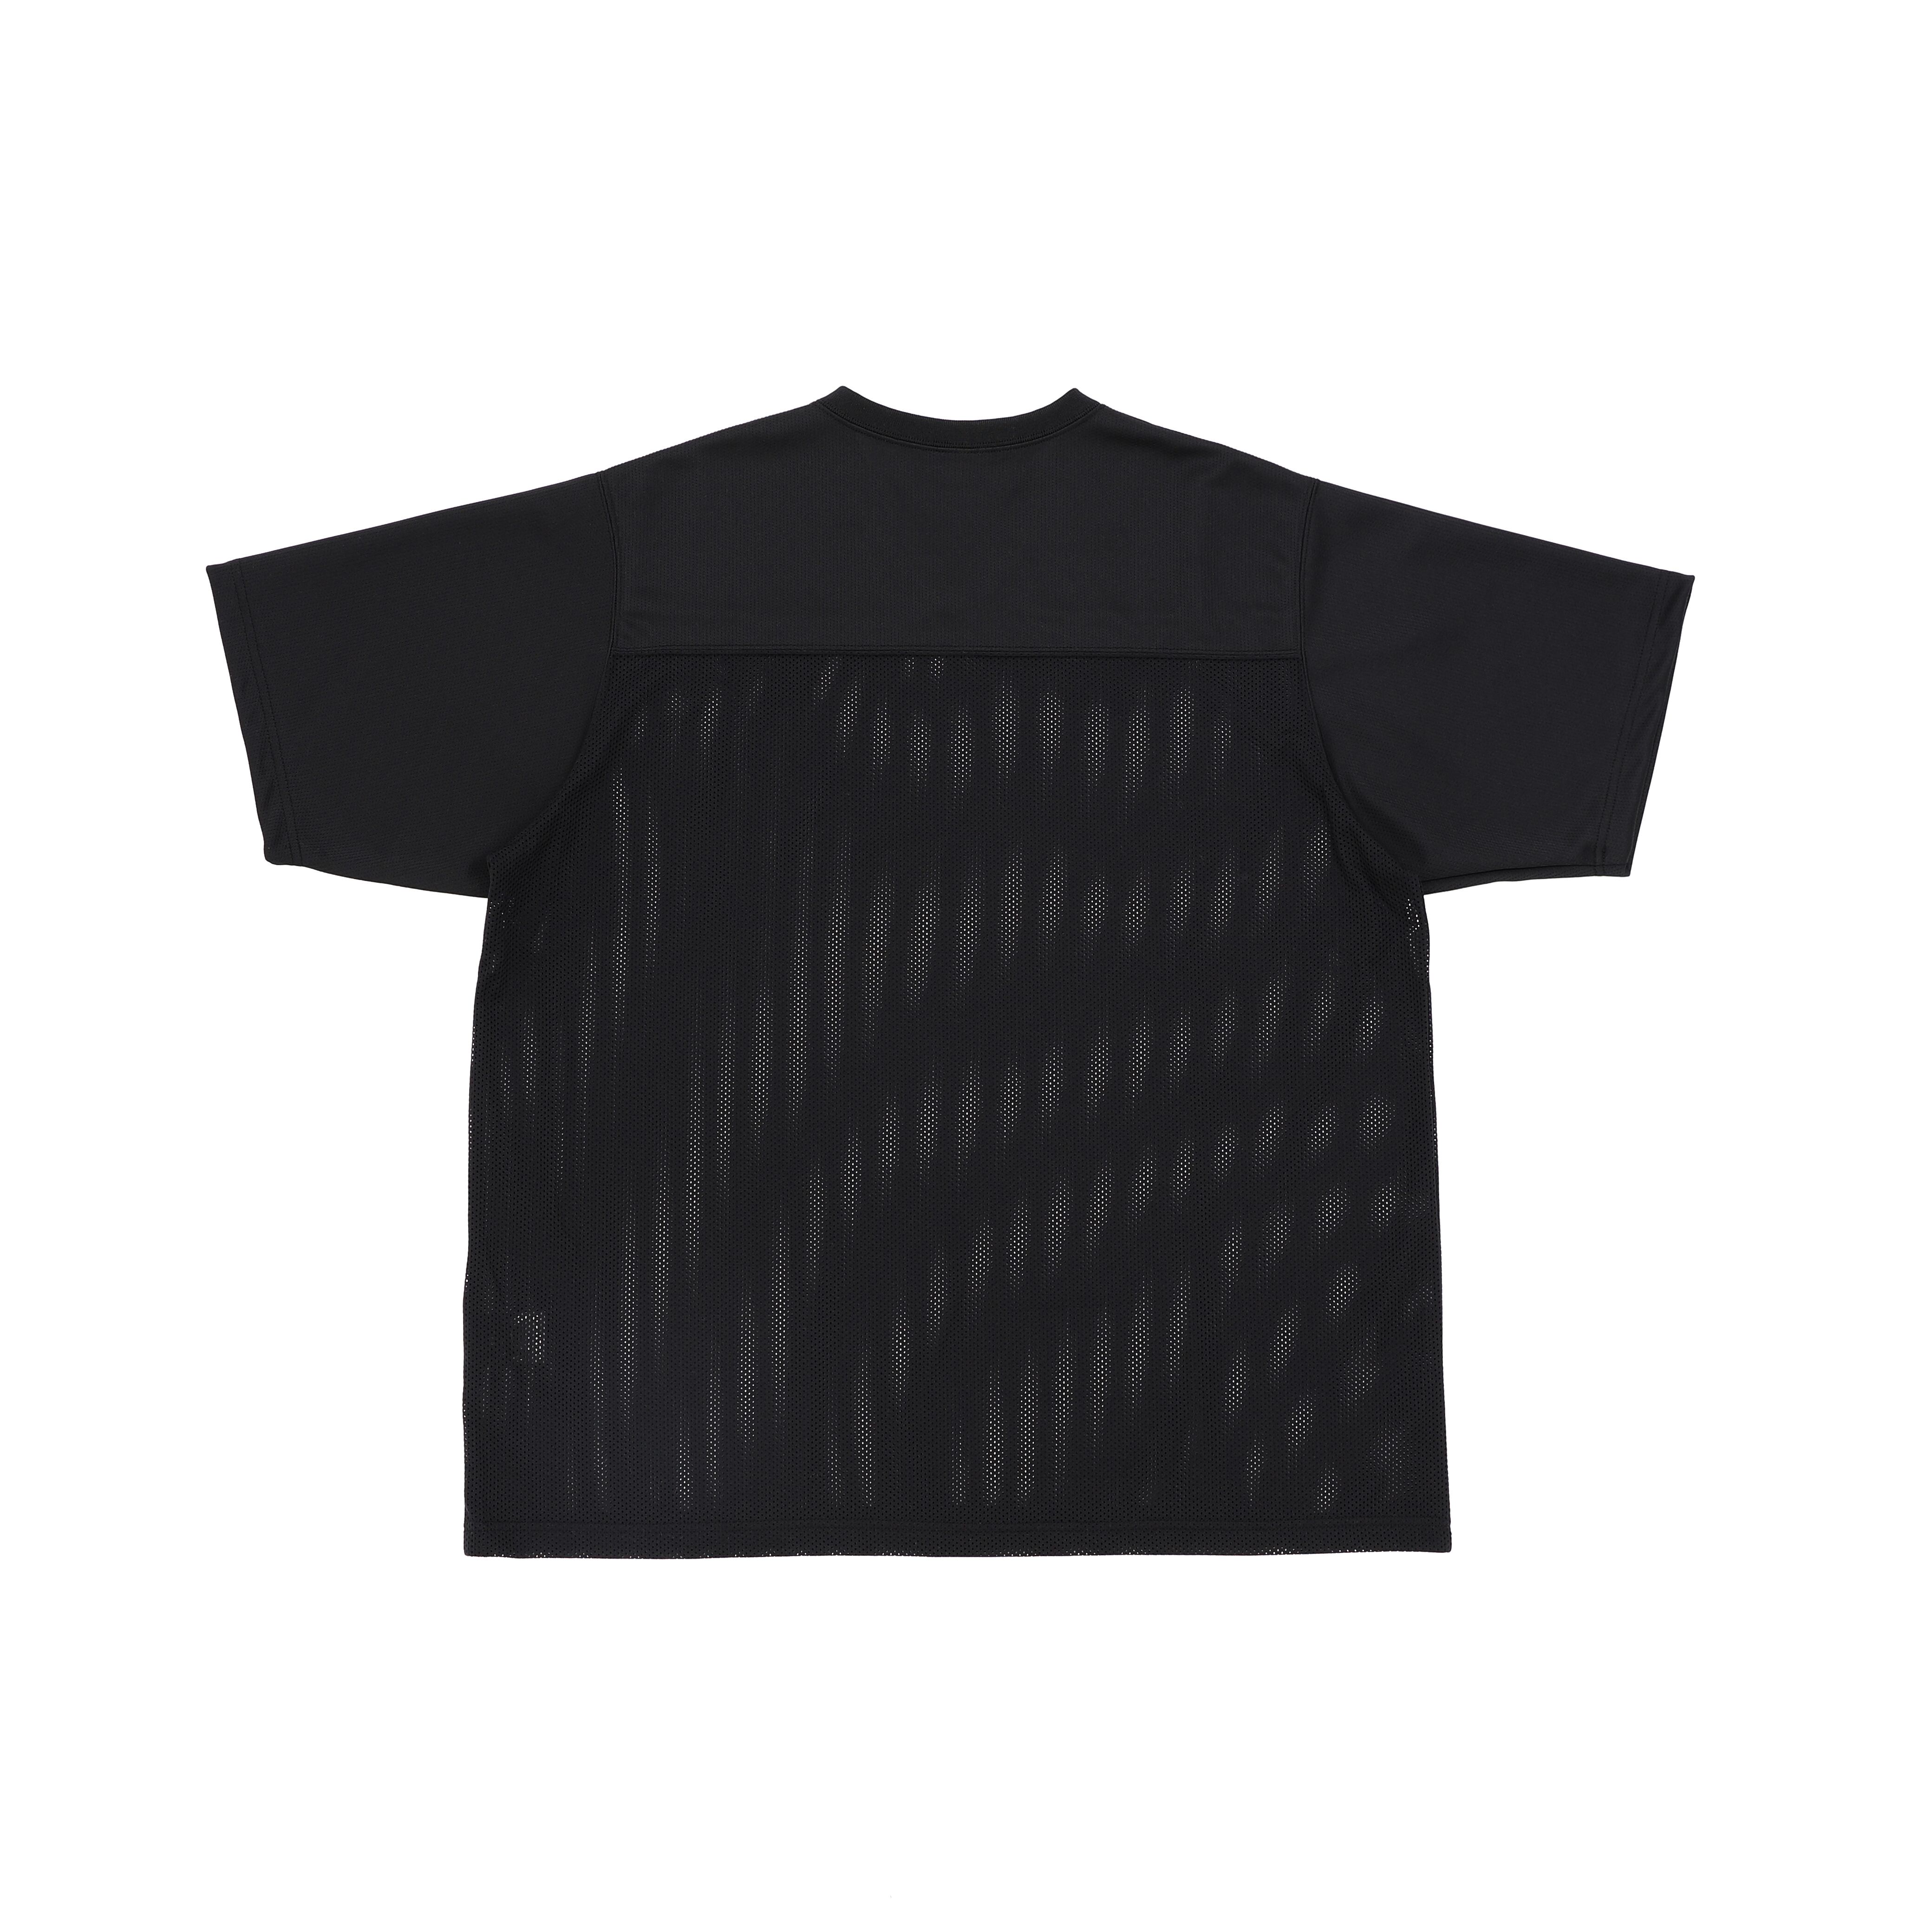 Mesh American Football T-shirts (black) | OVY